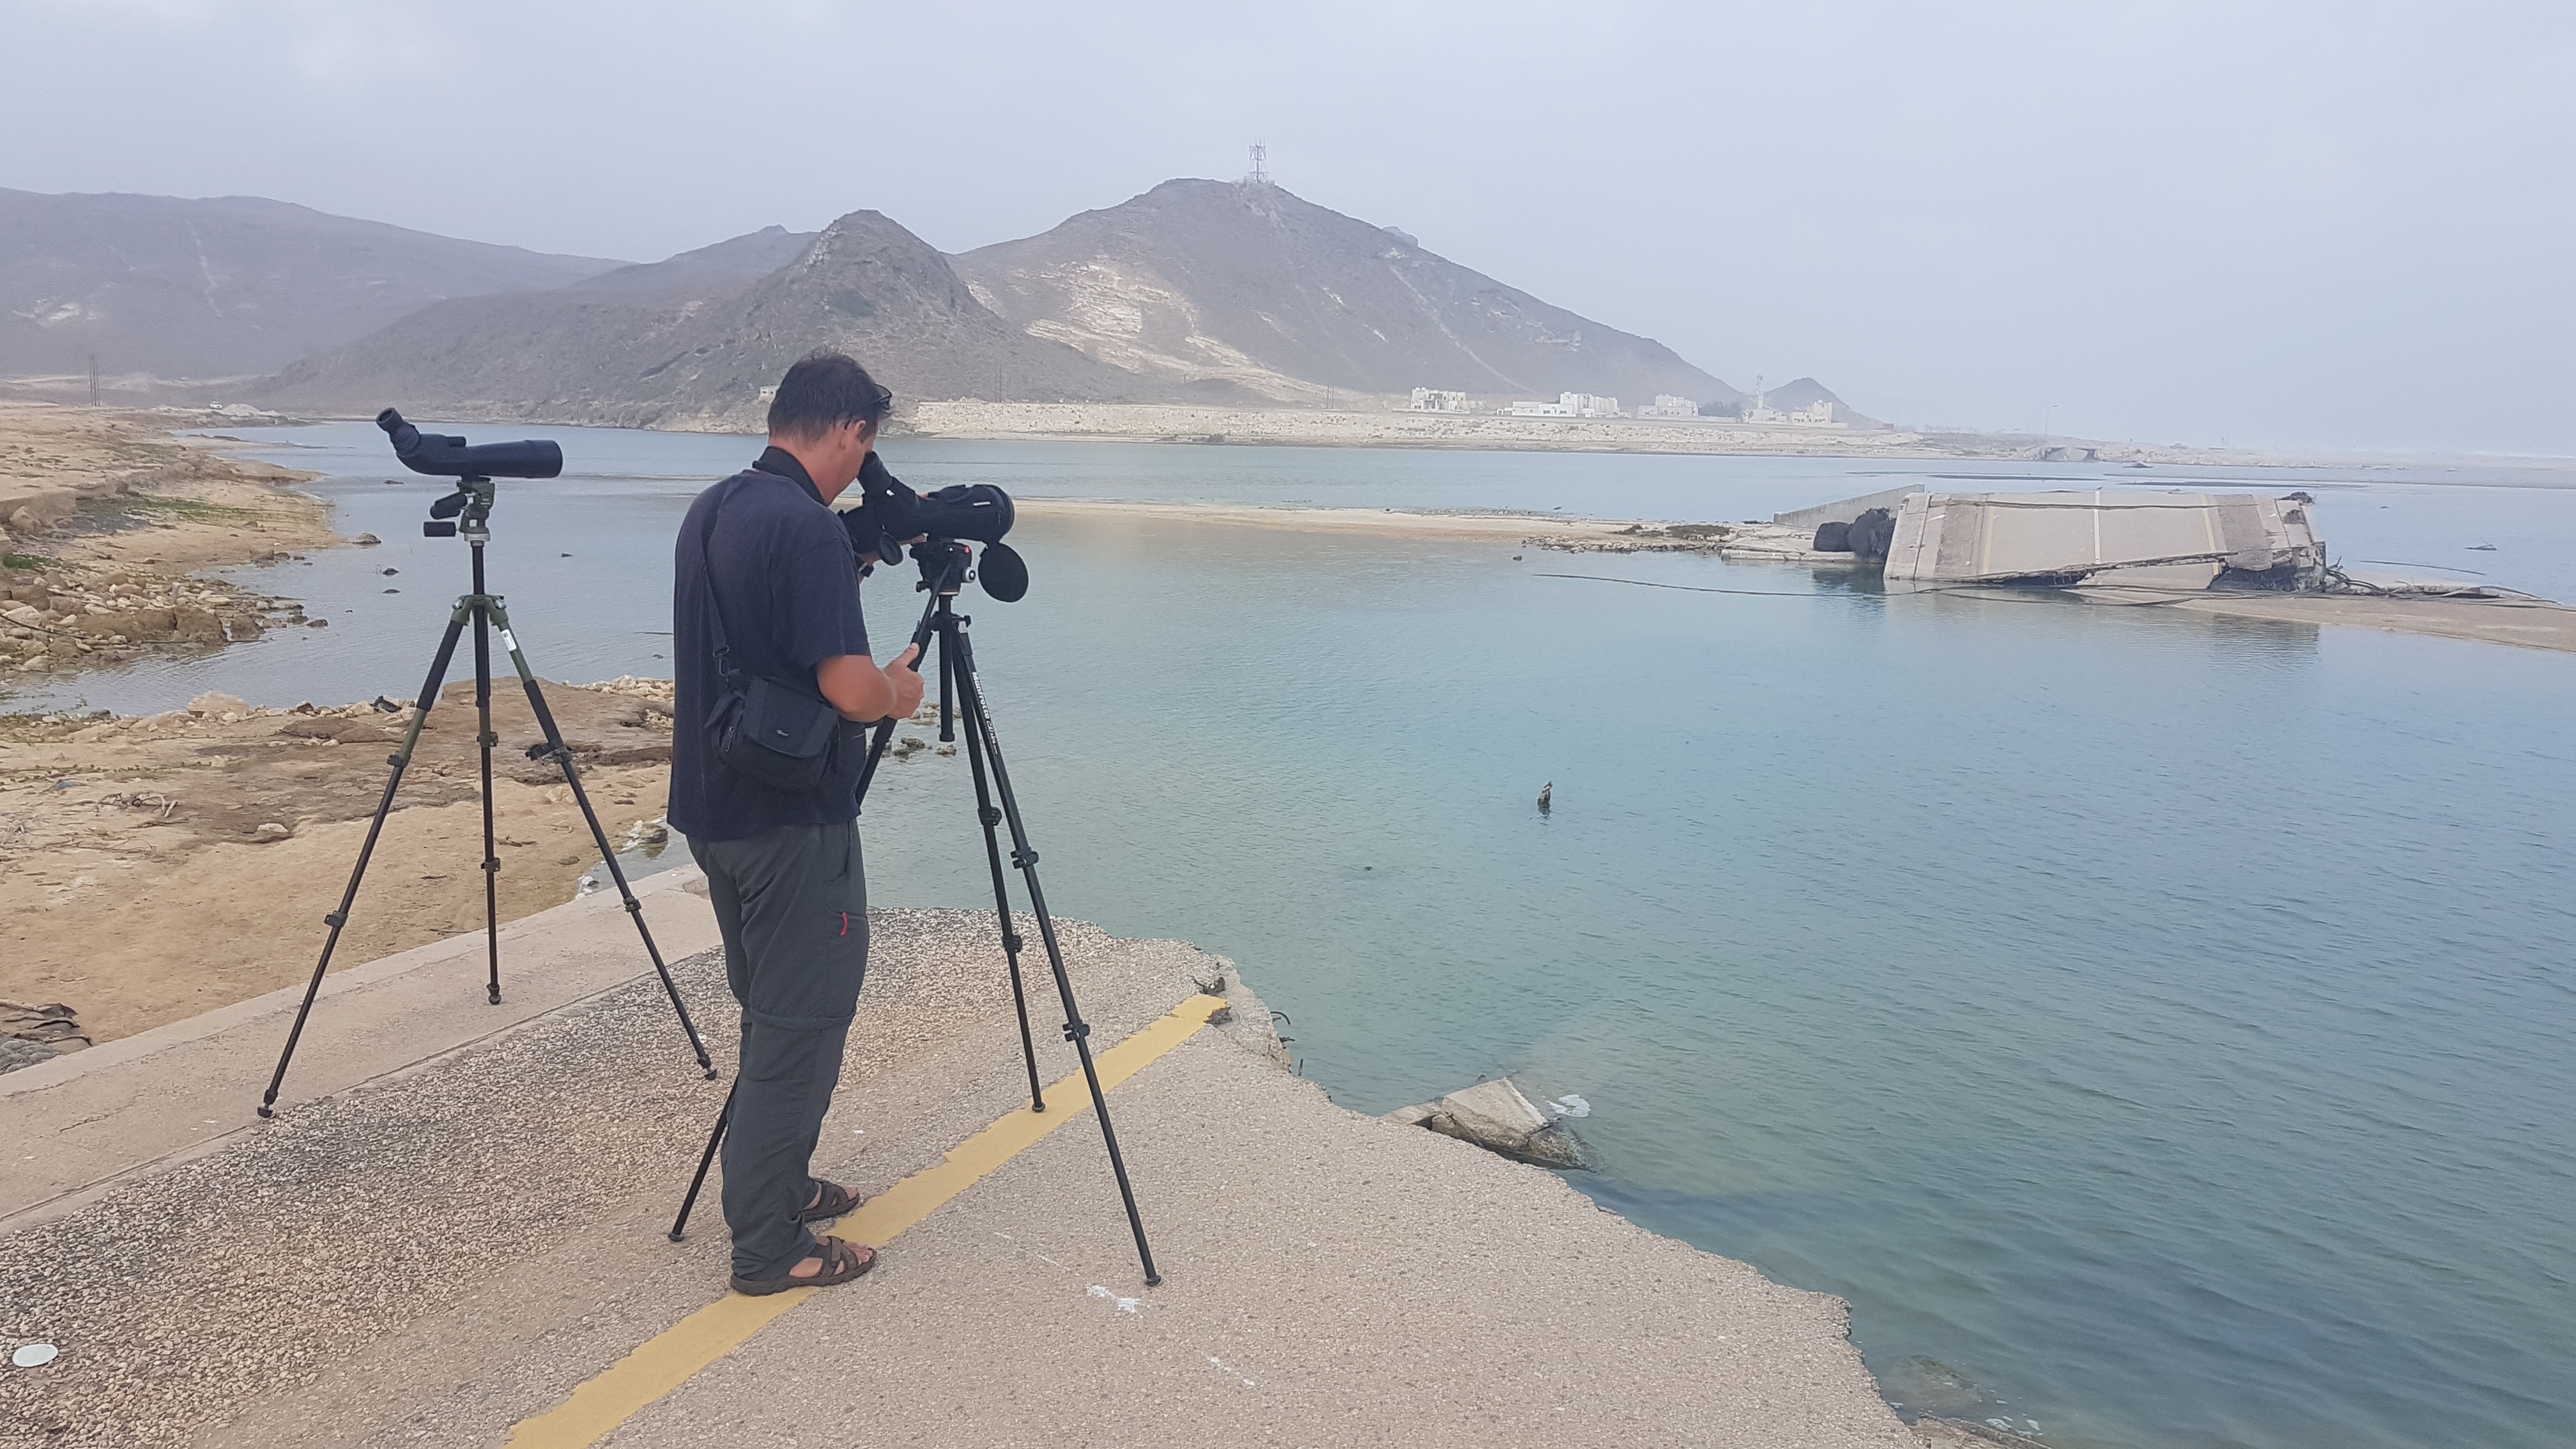 badania terenowe w Omanie